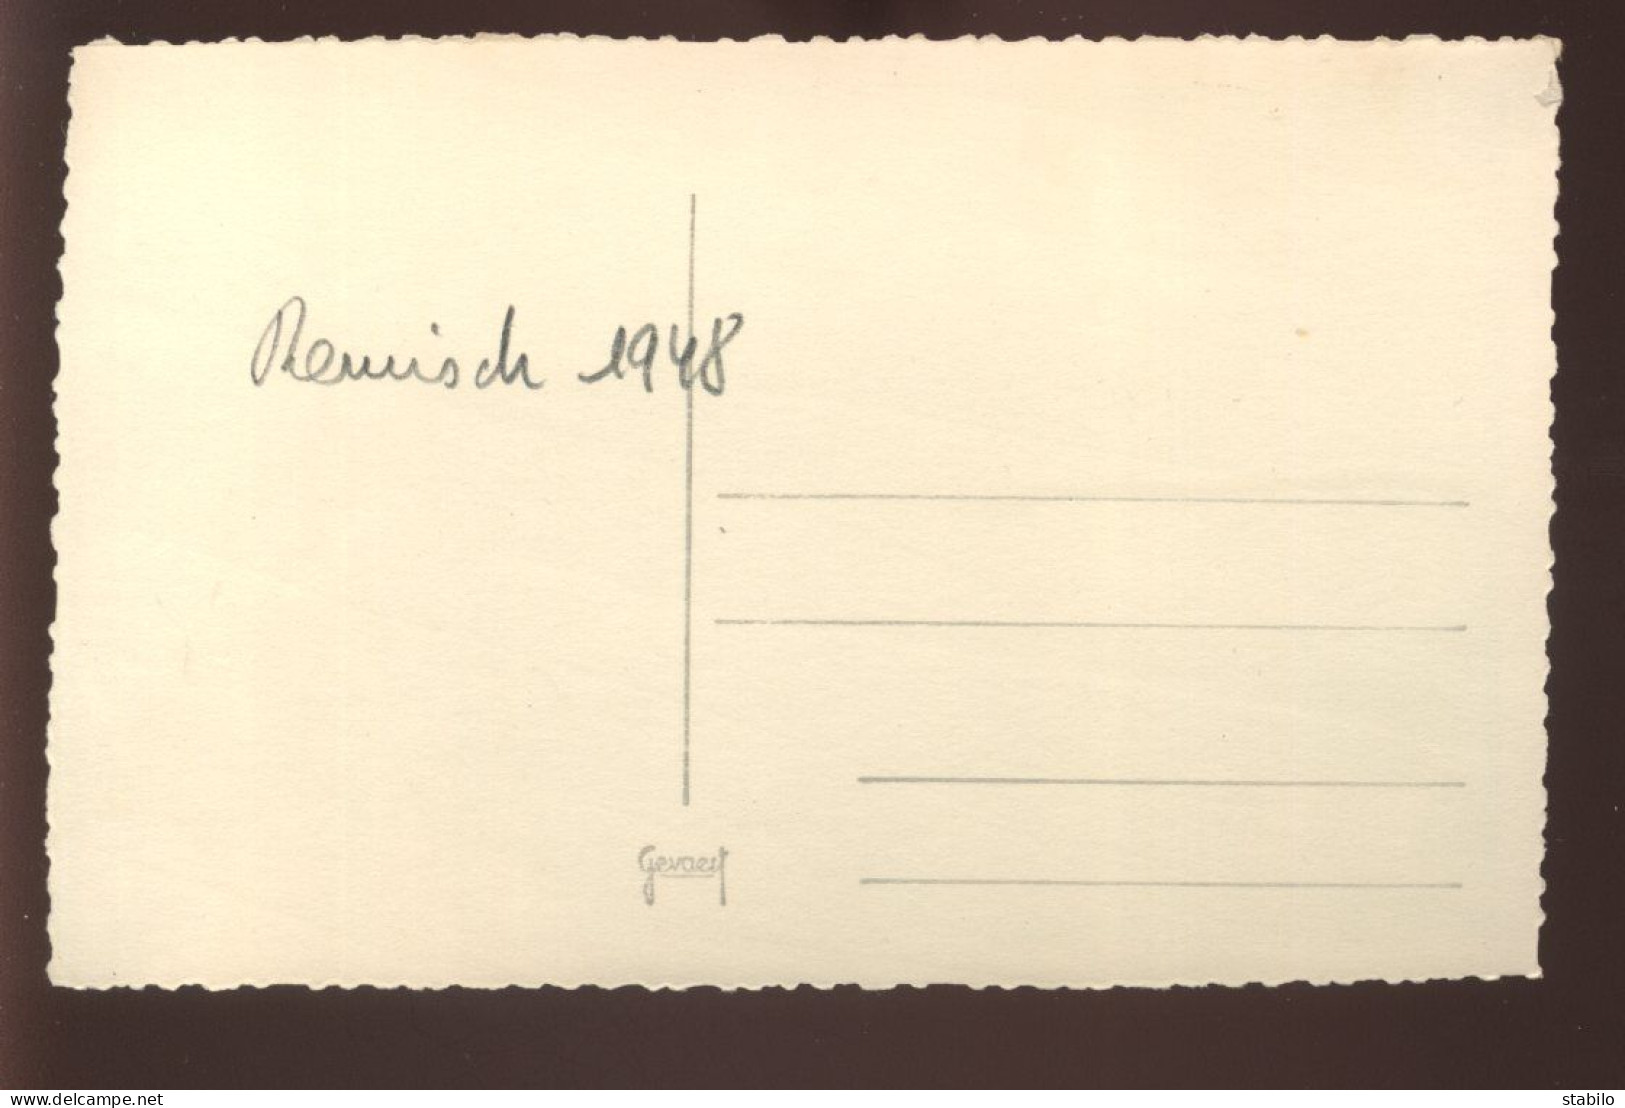 LUXEMBOURG - REMISCH - VENTE DE RAISINS - 1948 - FORMAT 13 X 8.5 CM - Plaatsen